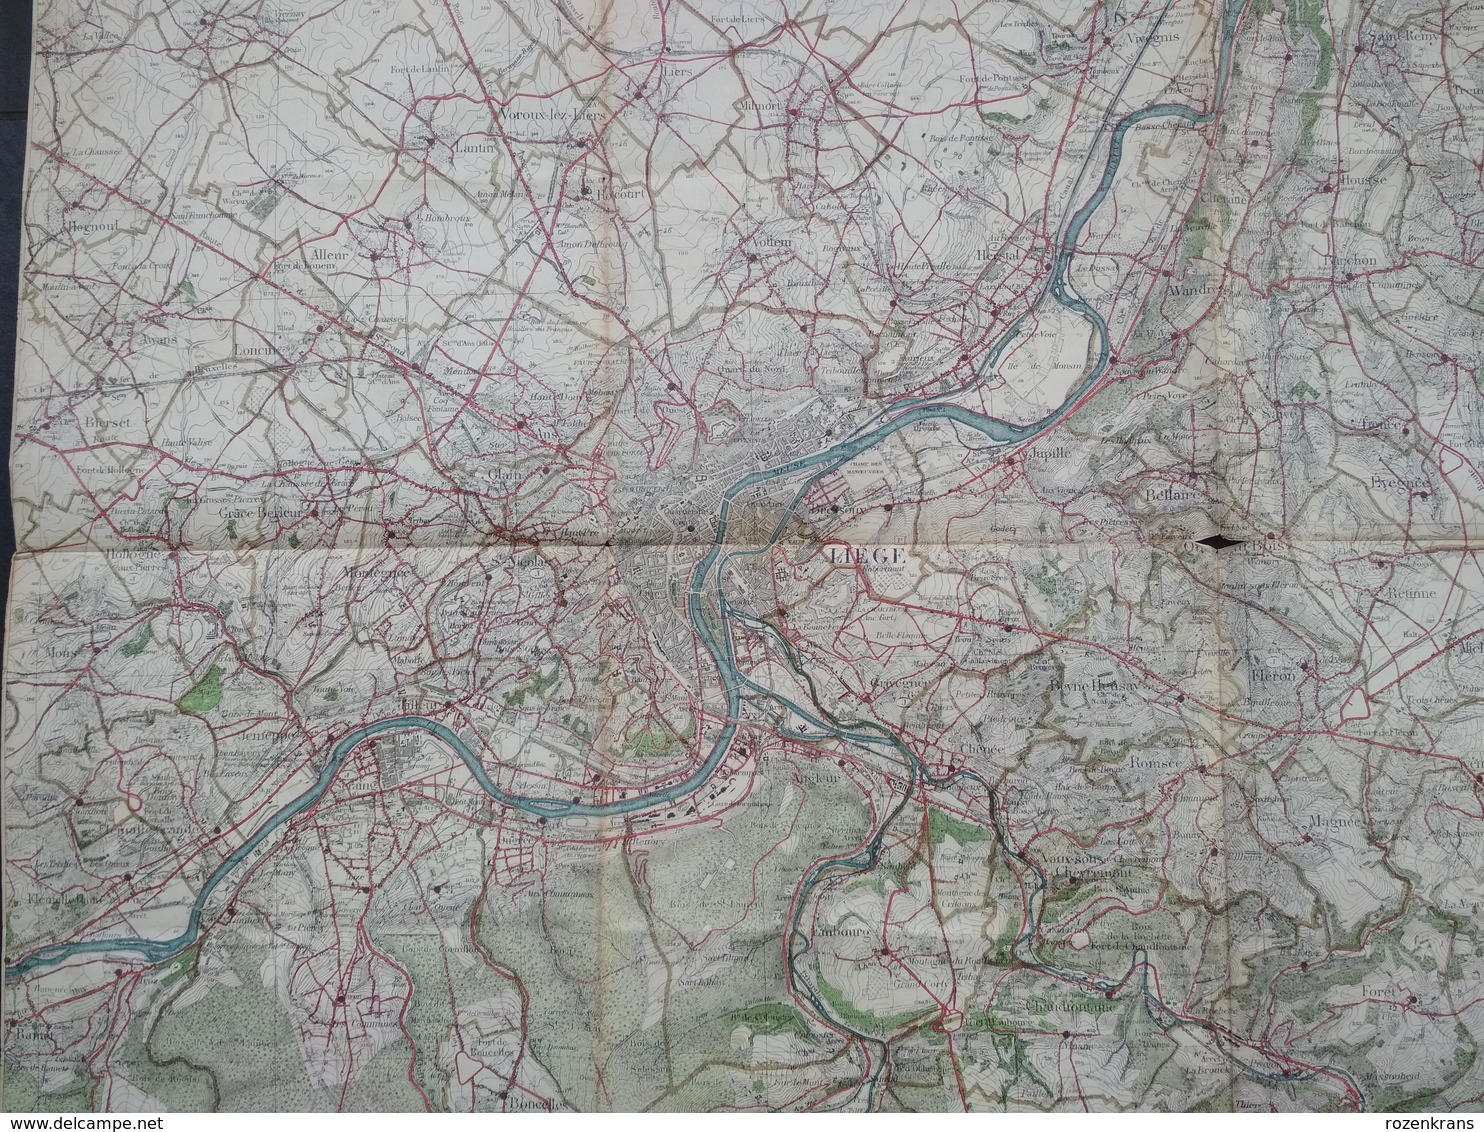 Topografische En Militaire Kaart STAFKAART 1906 Liege Verviers Embourg Herve Alleur Tilleur Jemeppe Ans Herstal - Cartes Topographiques